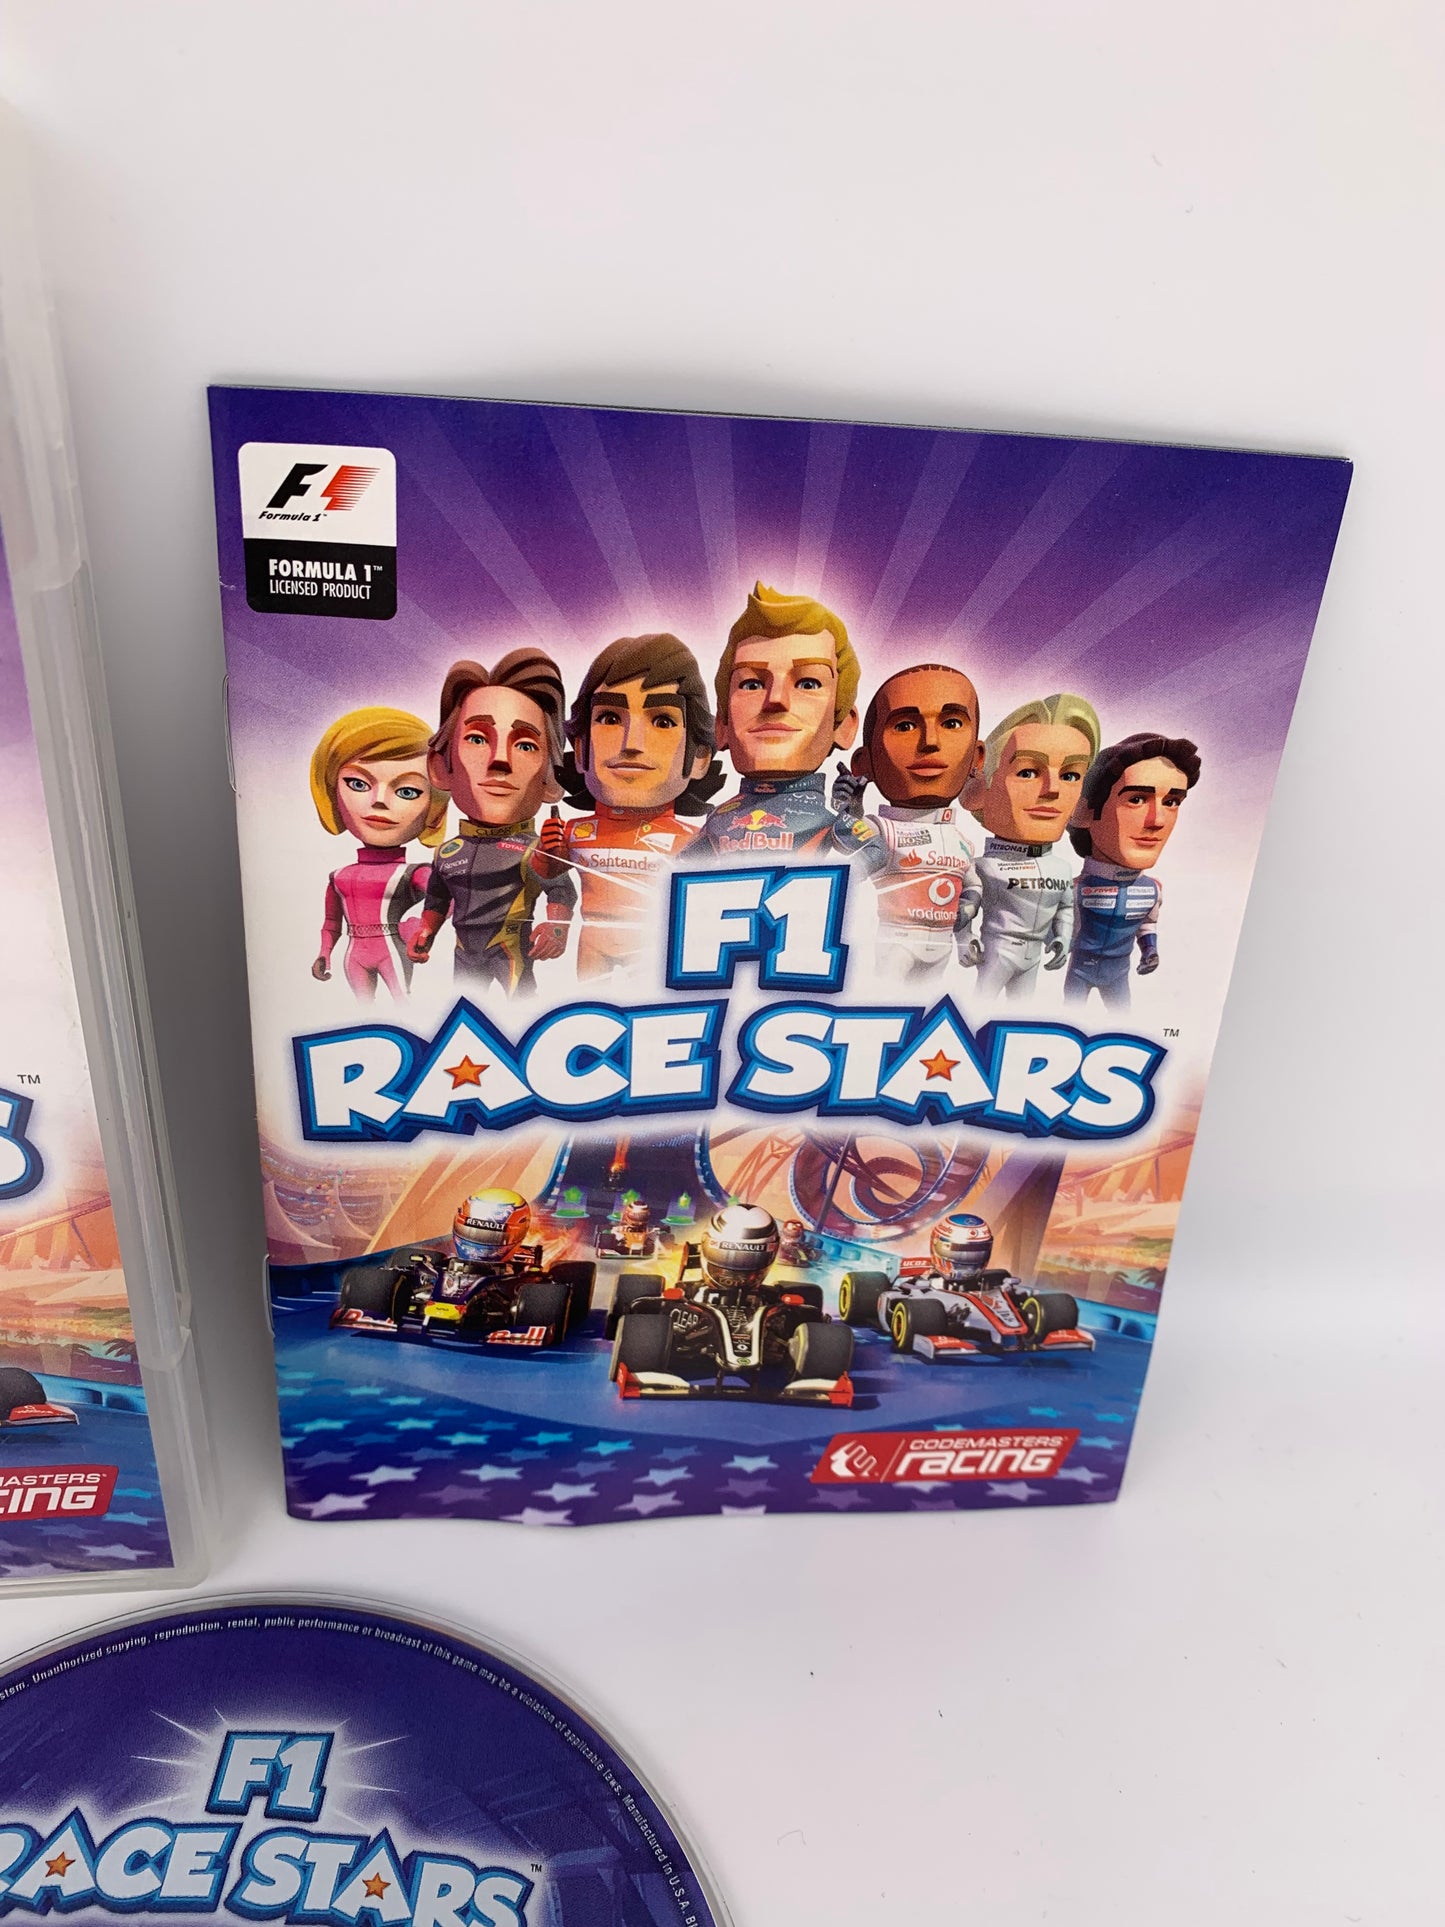 SONY PLAYSTATiON 3 [PS3] | F1 RACE STARS